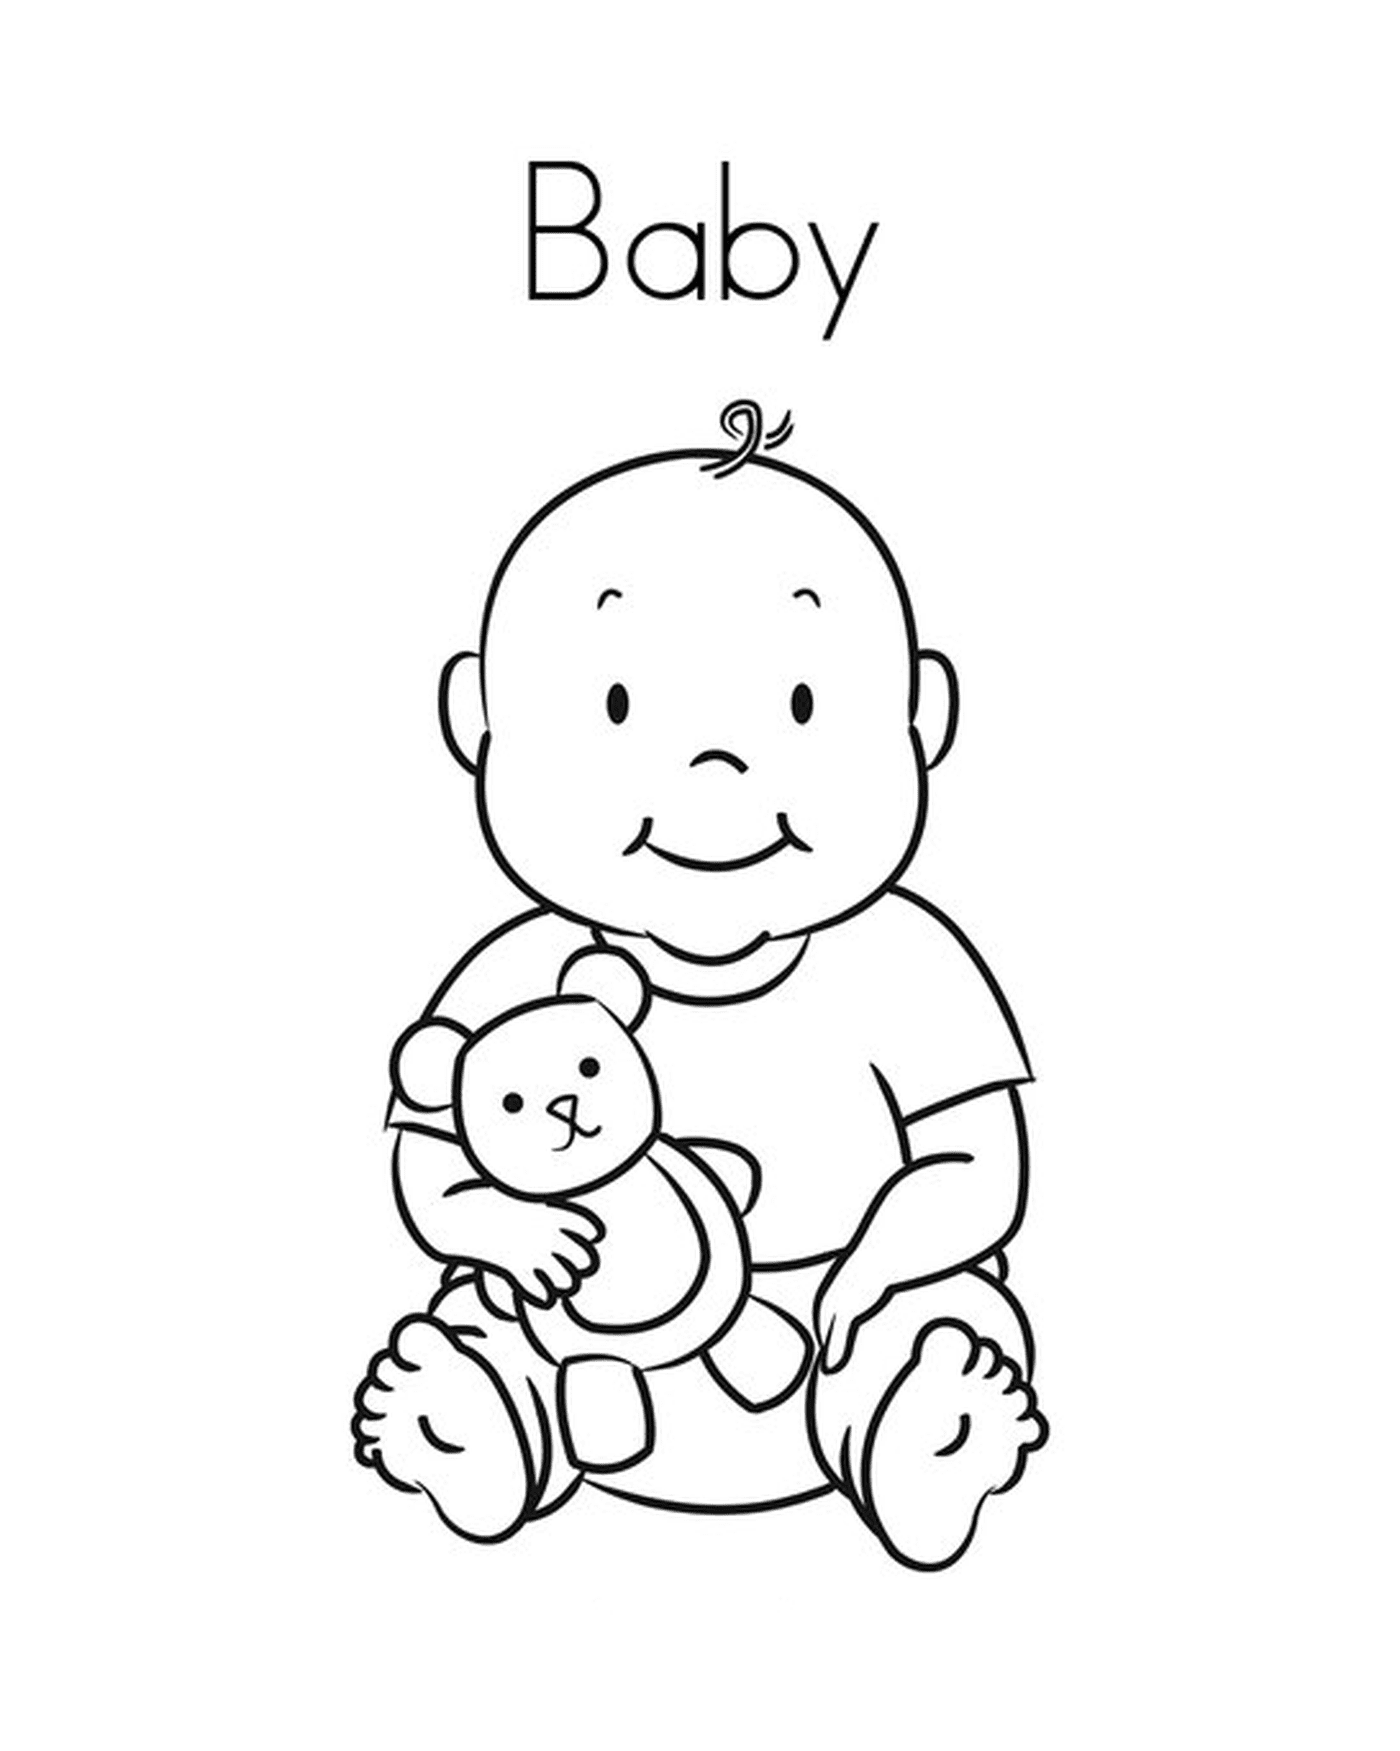  A baby holding a teddy bear 